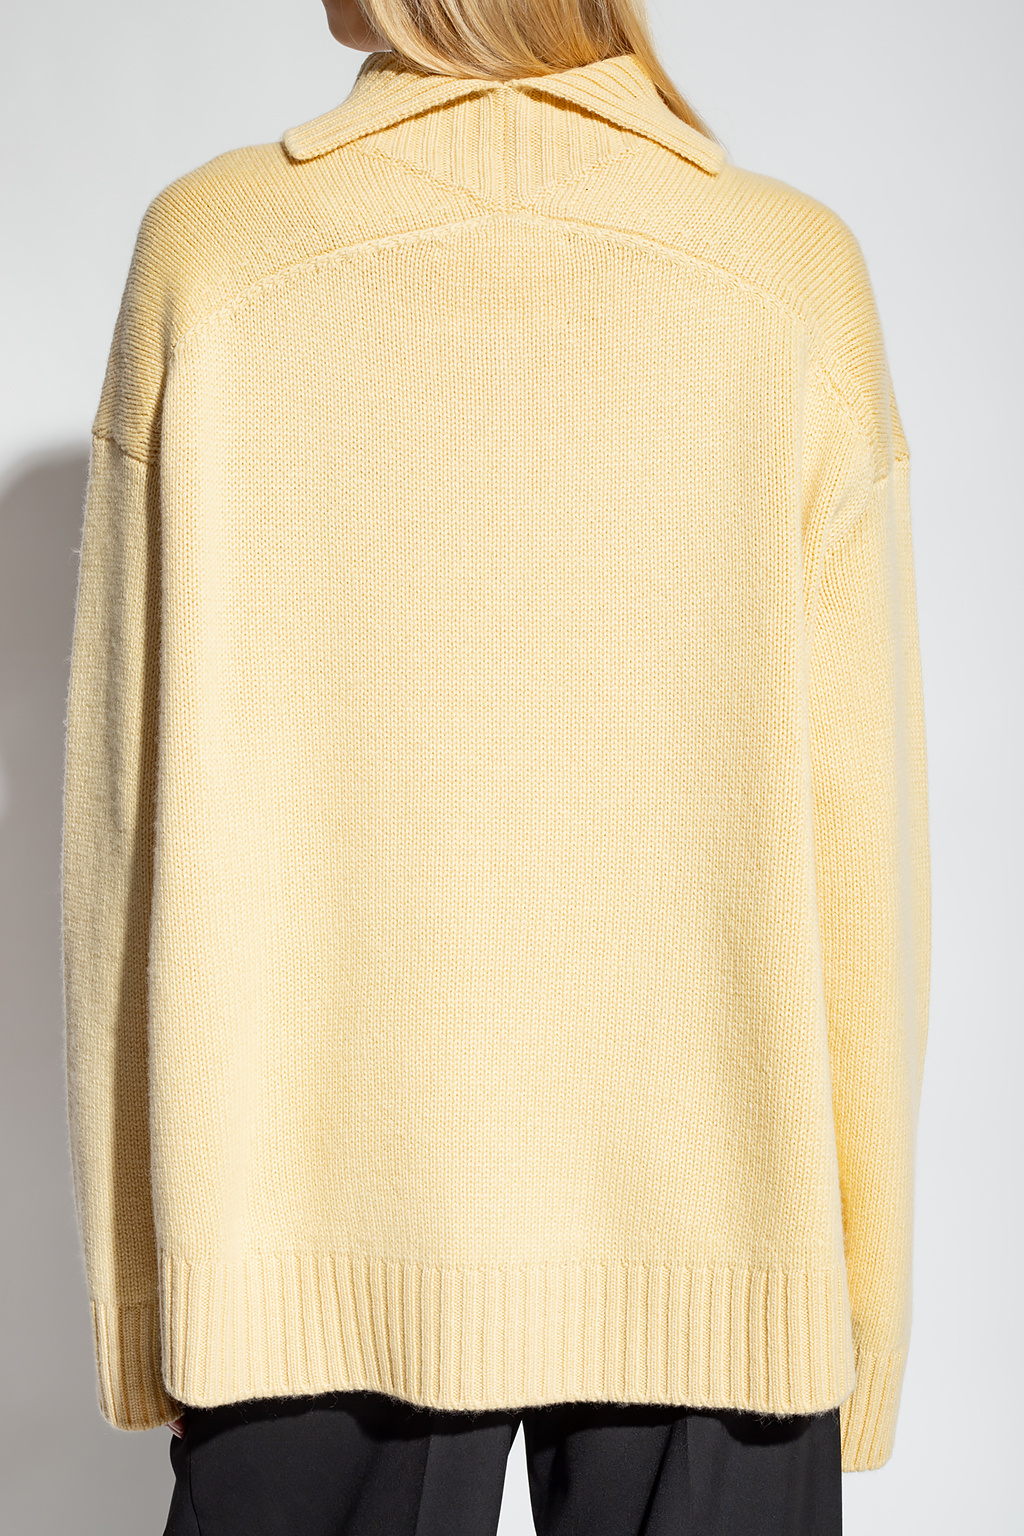 JIL SANDER Cashmere turtleneck sweater